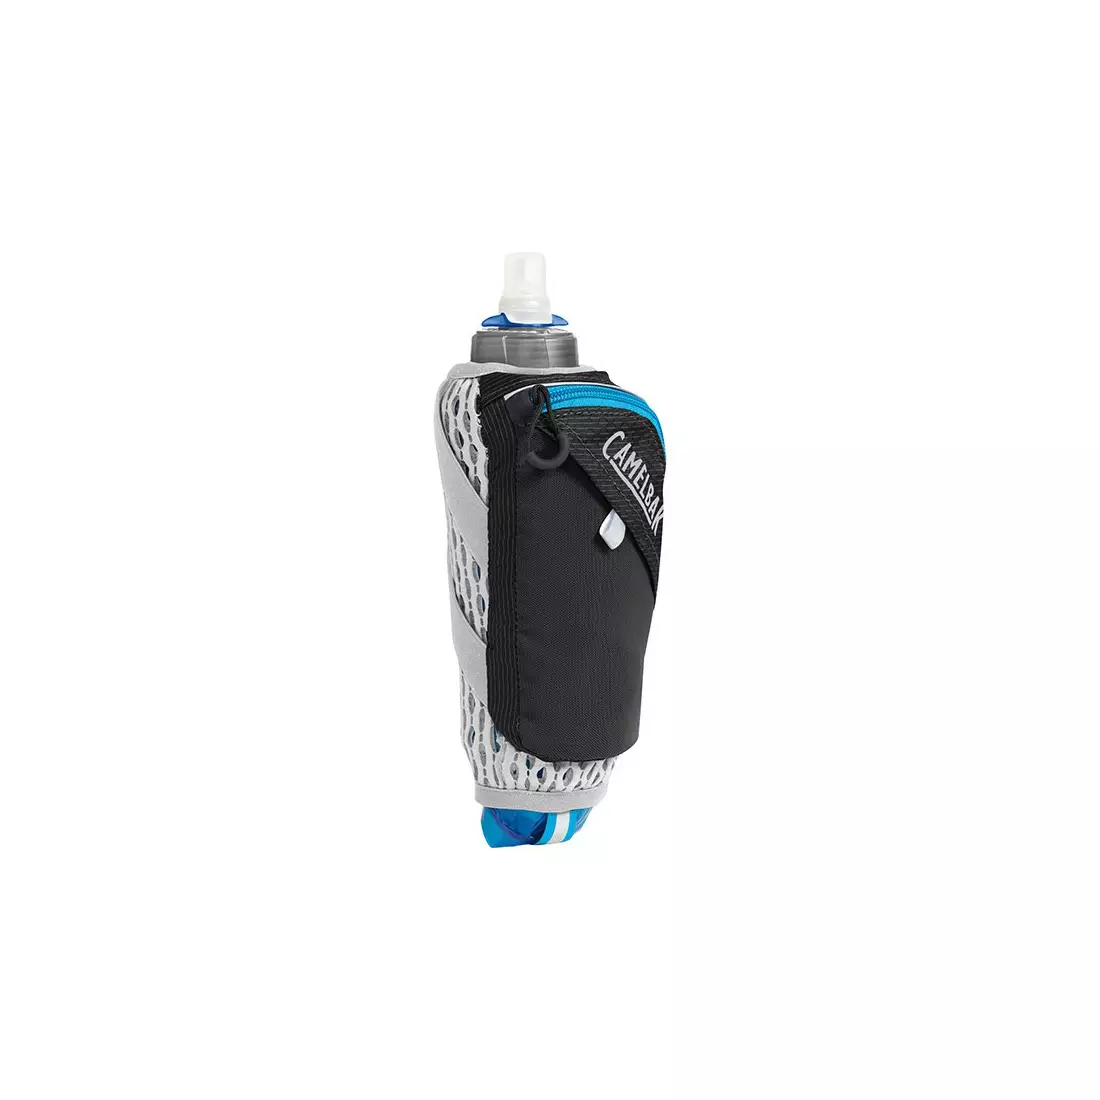 Camelbak láhev s termální vodou s běžící rukojetí Ultra Handheld Chill 0.5L Quick Stow Flask Black/Atomic Blue